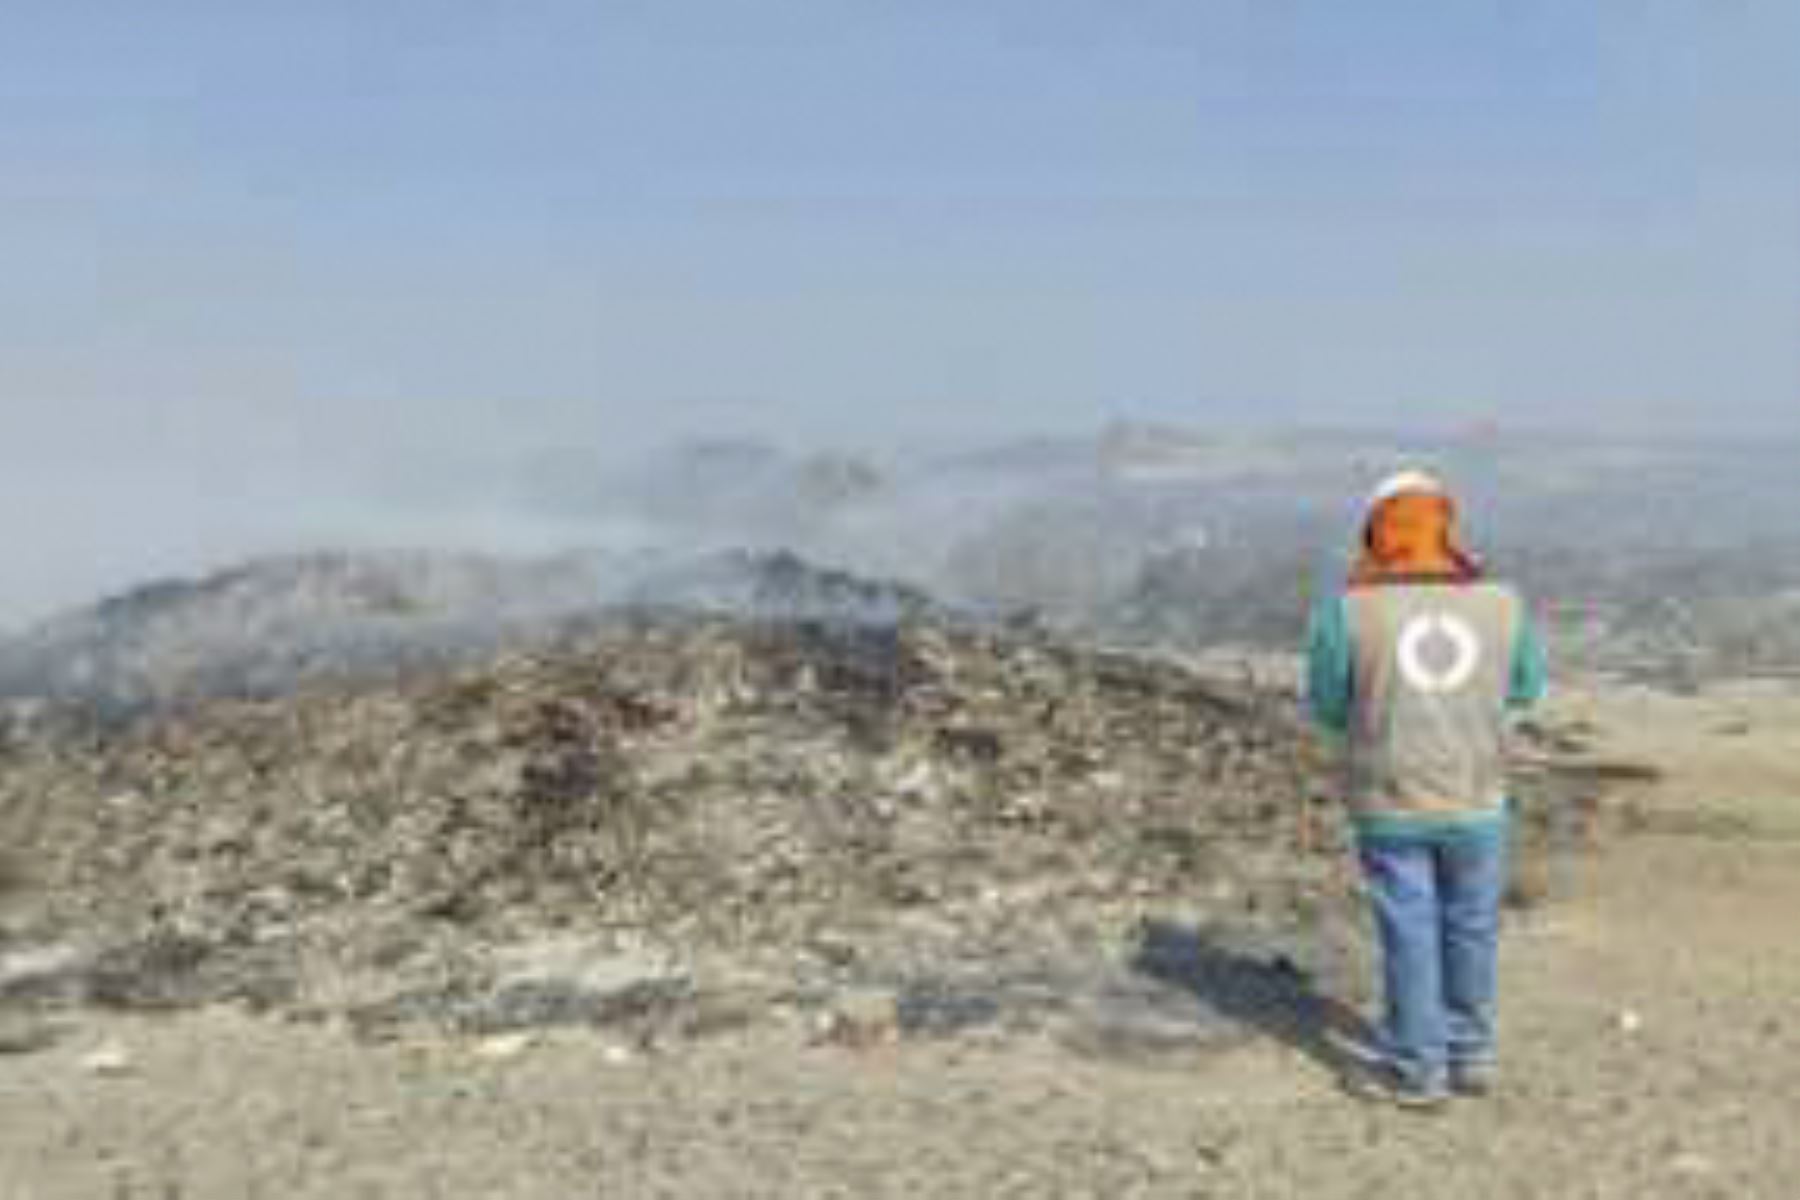 El área degradada de residuos sólidos municipales denominada “Botadero altura del km 9.5 carretera Santana Chiri” tiene una extensión de 23.79 hectáreas. Foto: ANDINA/OEFA